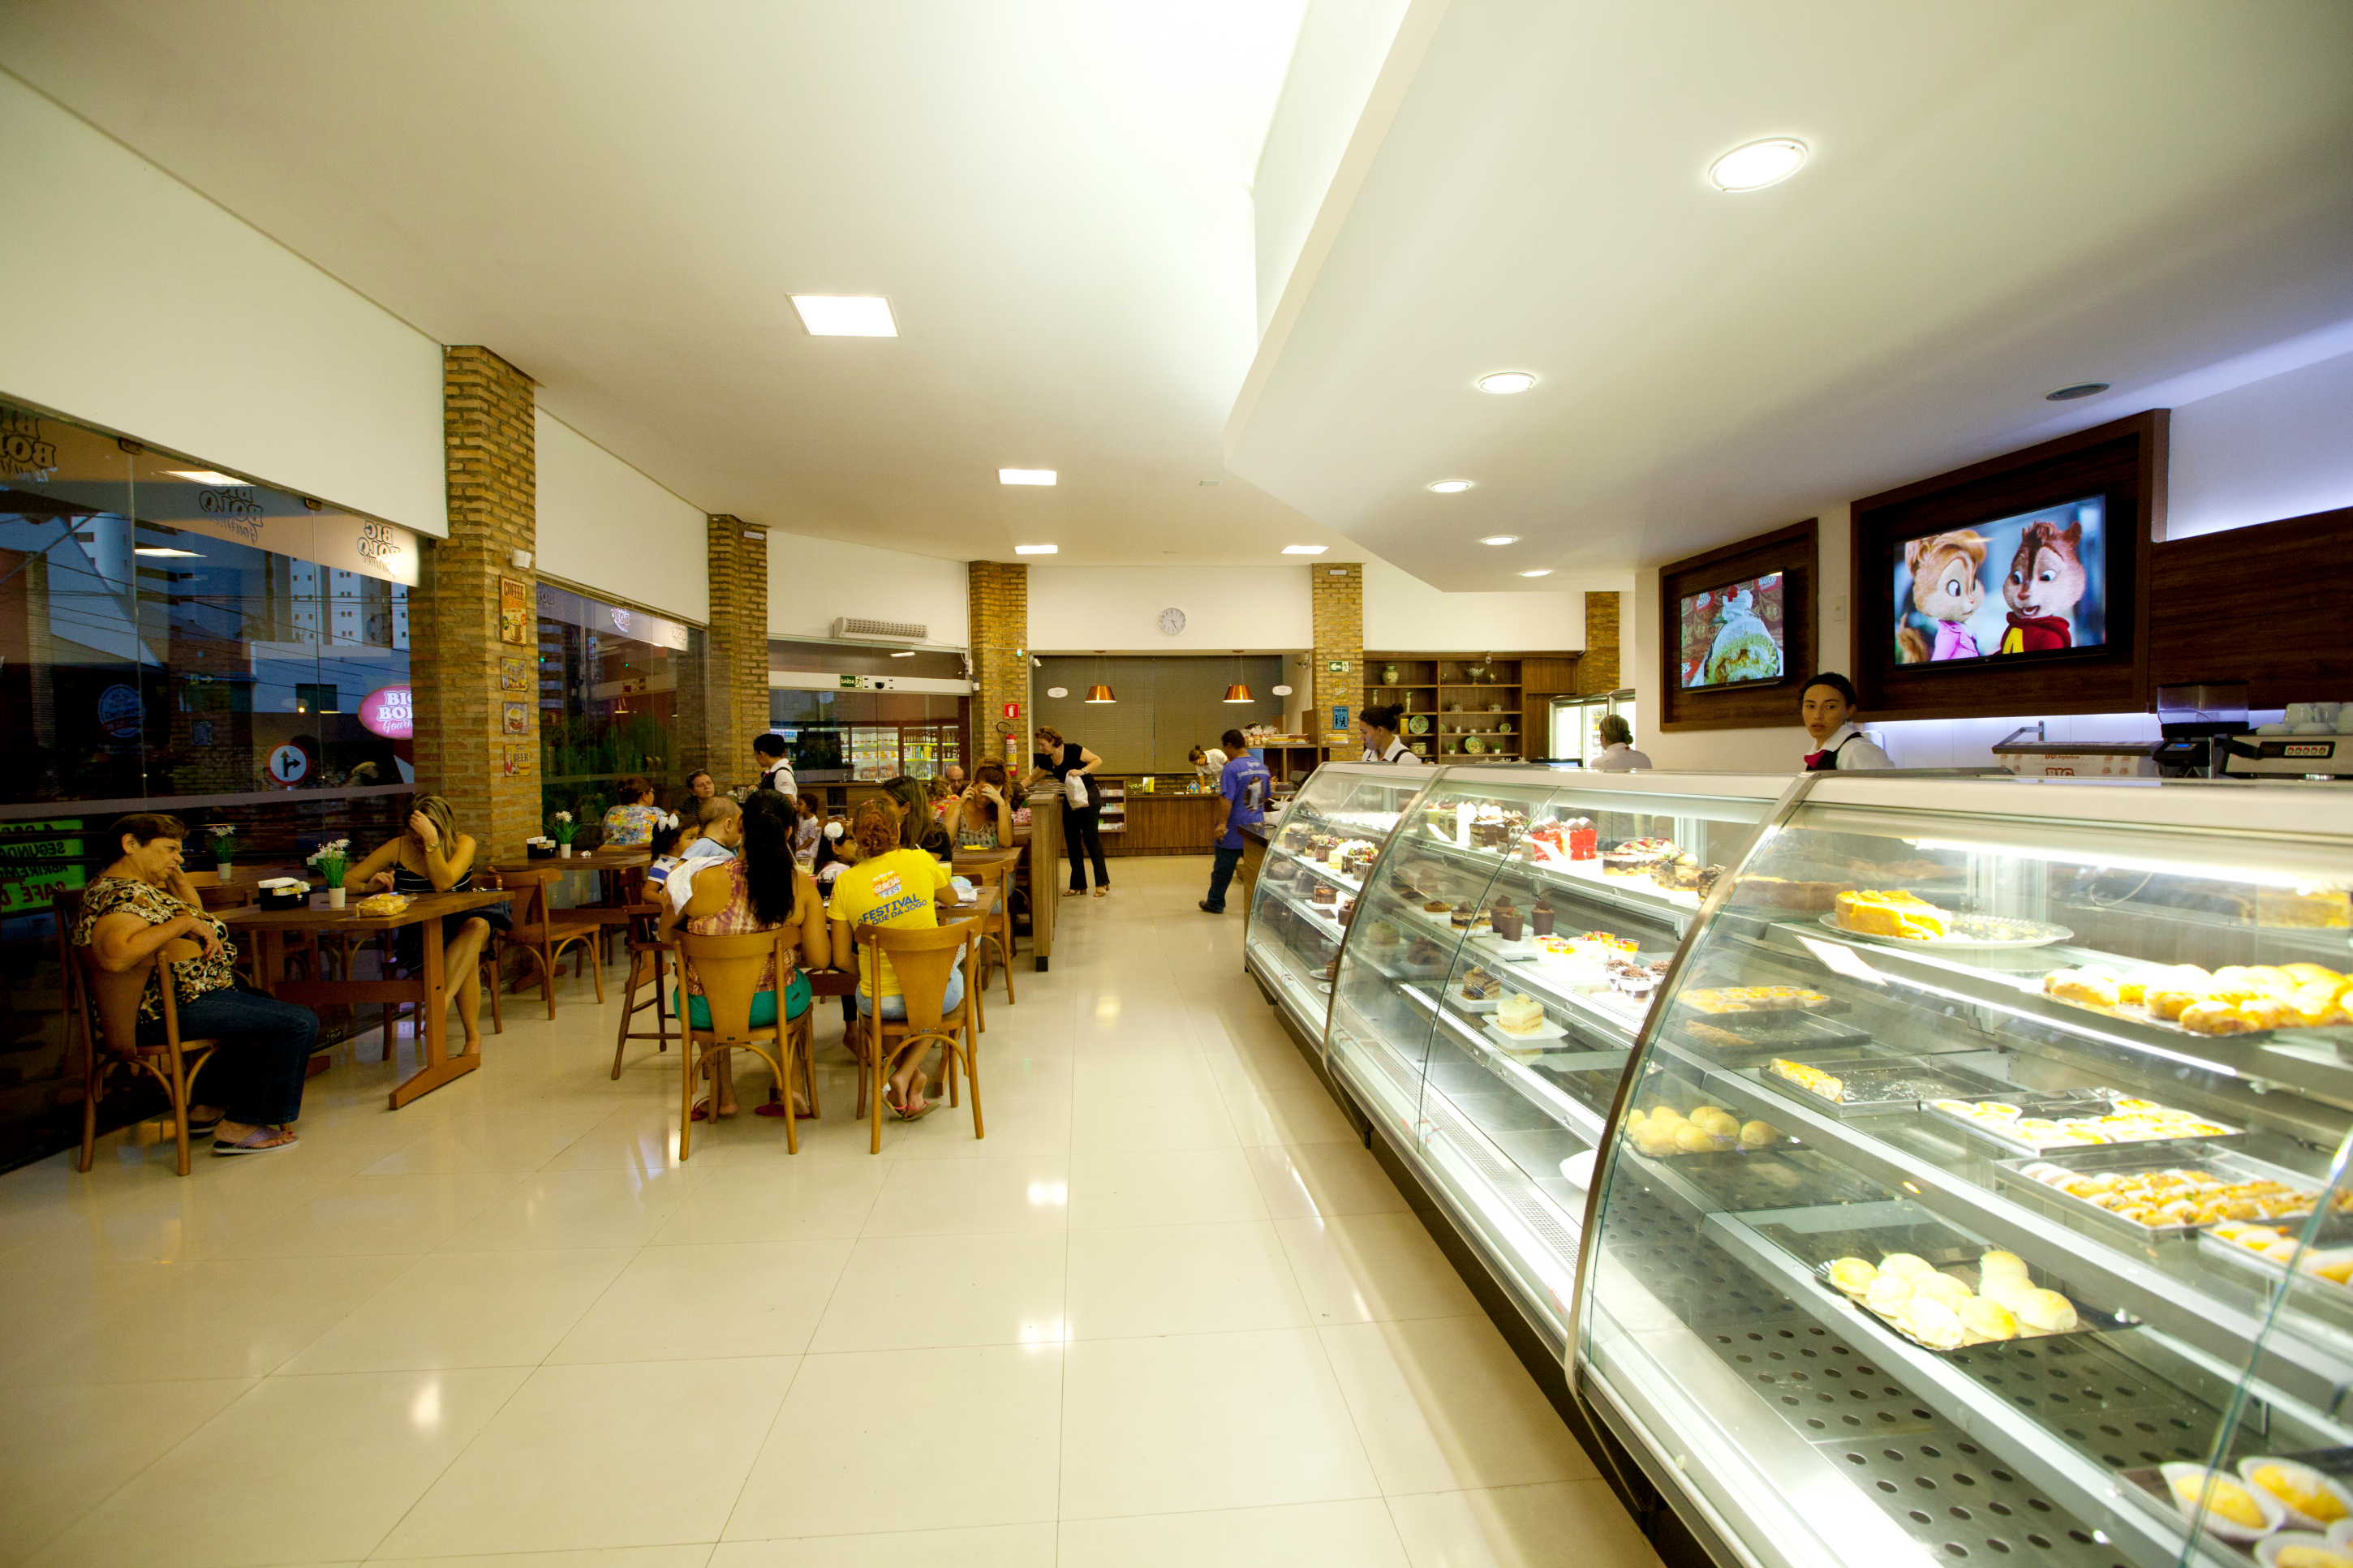 Cafés em Aracaju, Delicatessen em Aracaju, Bolo, Big Bolo, Bolos em Aracaju, lugar perfeito, fotos de Aracaju, fotos de Sergipe, tortas em Aracaju, salgados em Aracaju